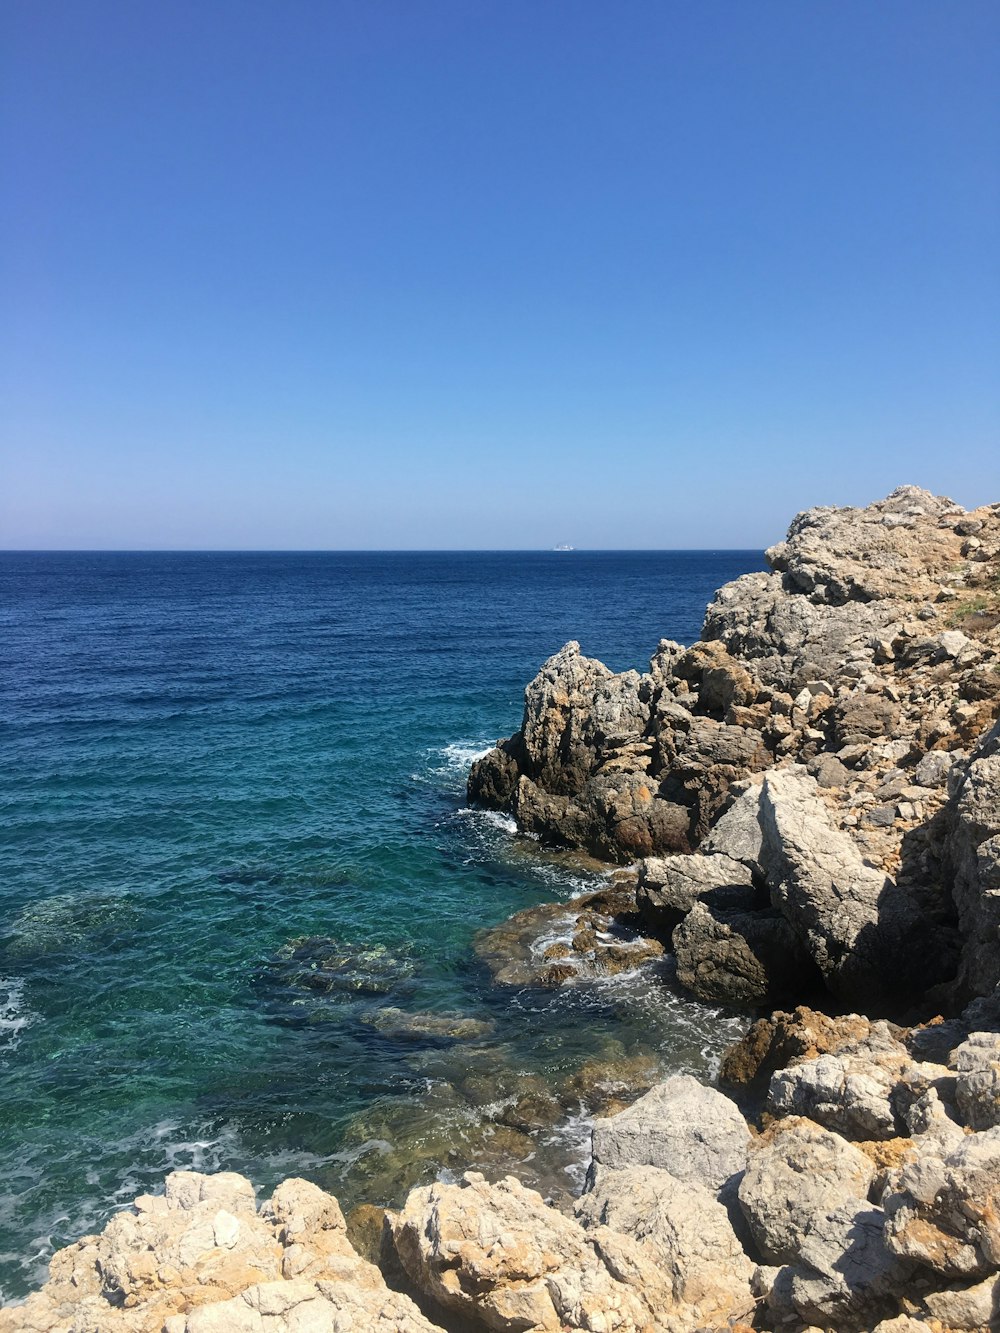 Mar en calma y rocas durante el día